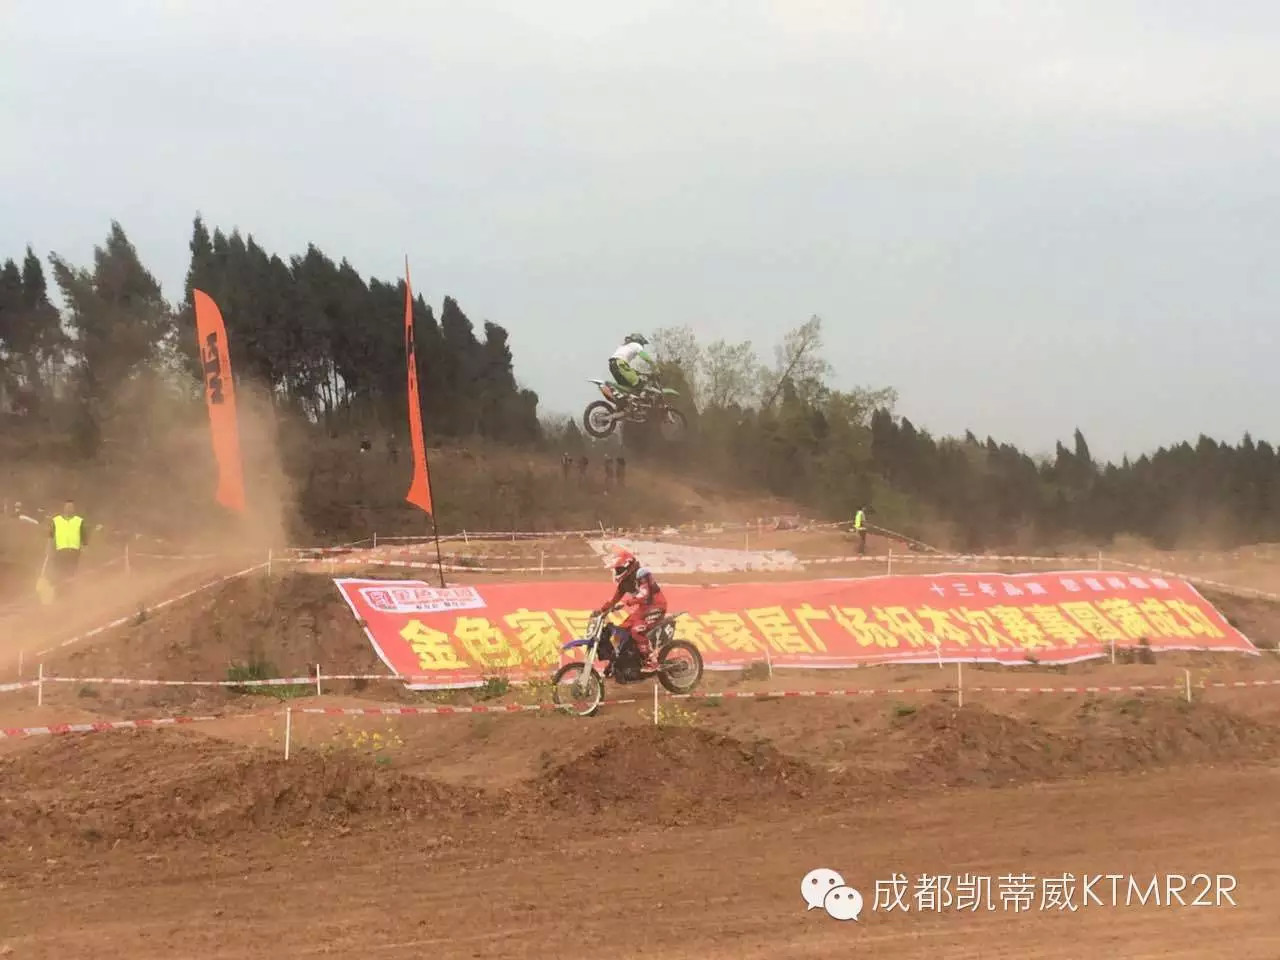 飞跃高台——KTM绵阳越野摩托车表演赛现场直击